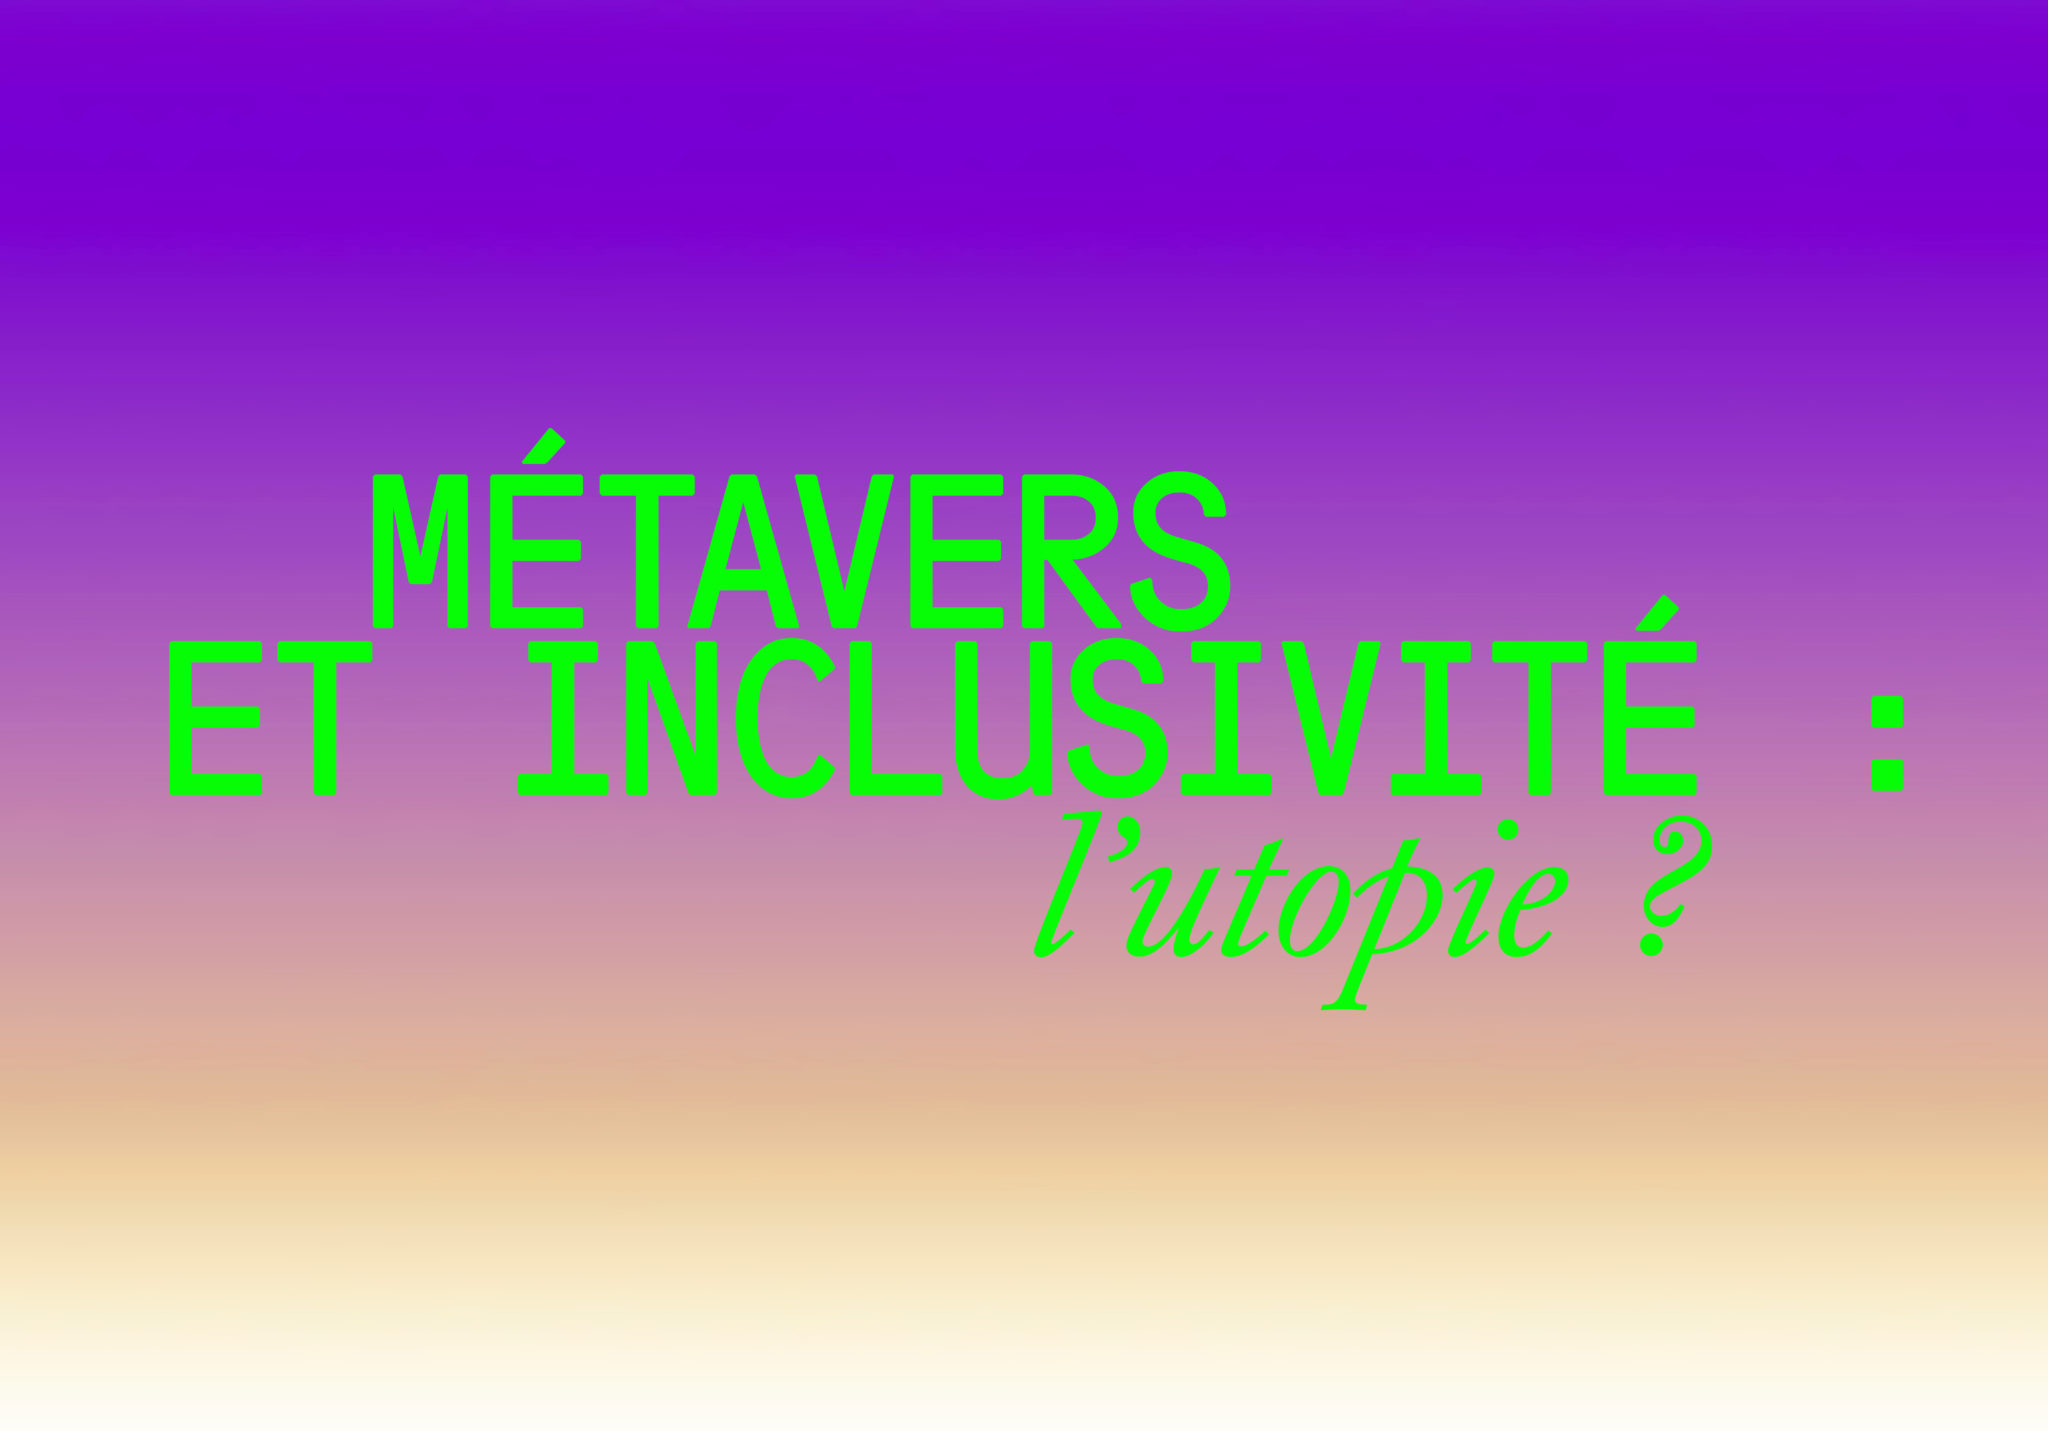 texte vert sur fond dégradé violet "Metavers et inclusivité : l'utopie ?"